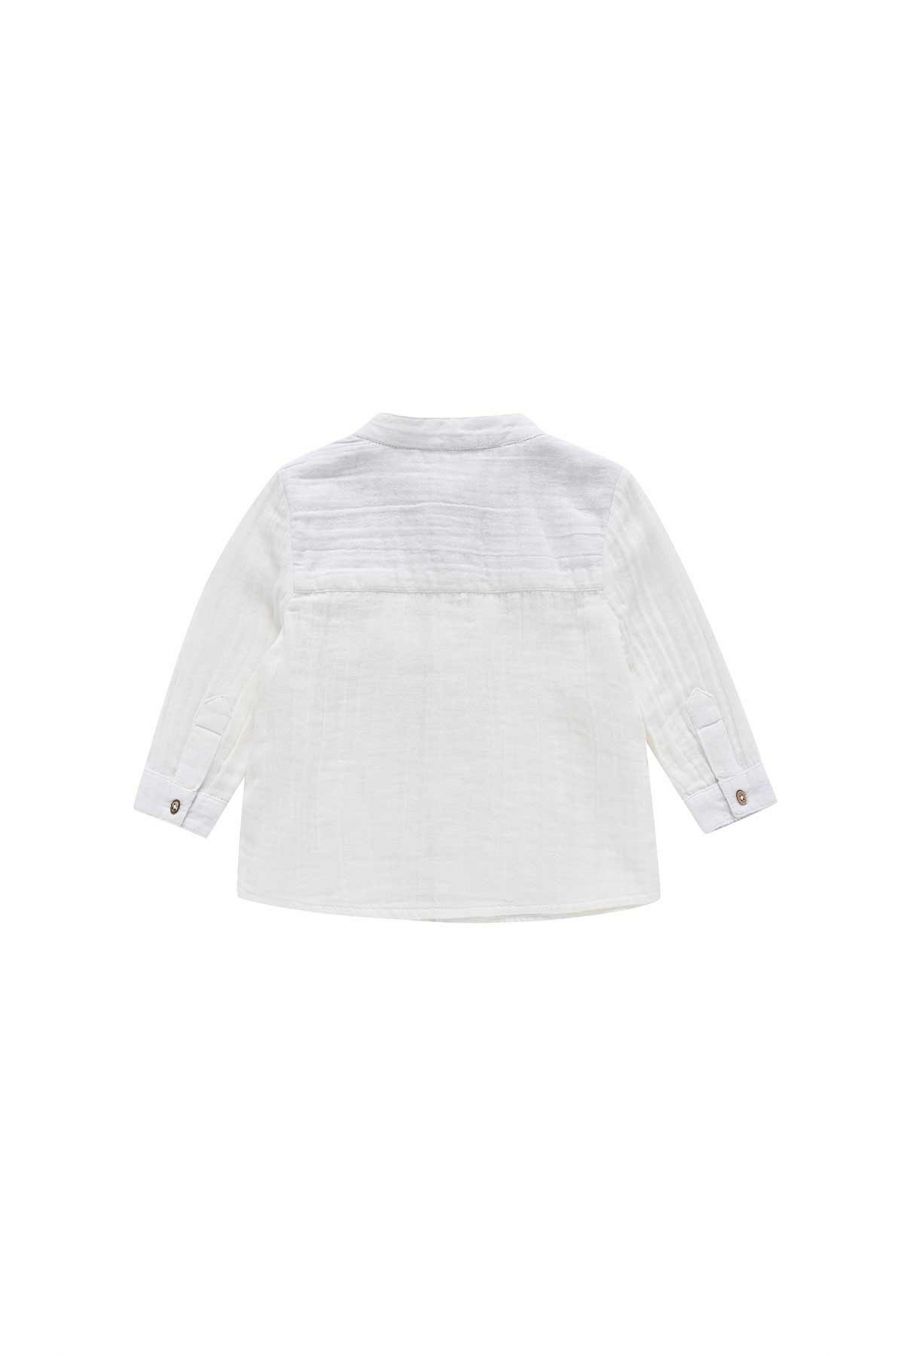 bebe-garcon-chemise-amod-white